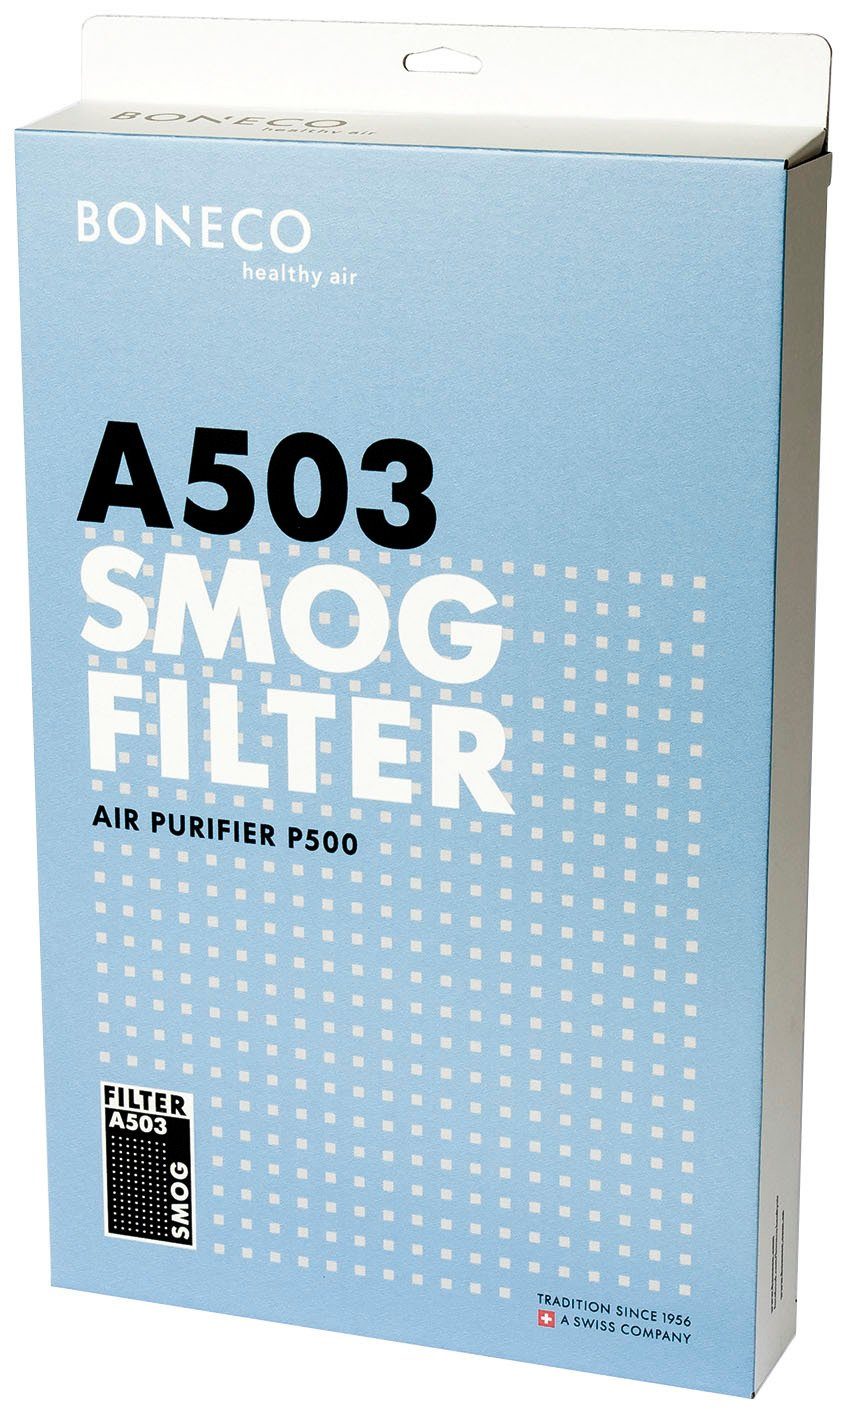 Luftreiniger Kombifilter Filter P500 für Zubehör A503, Boneco Smog